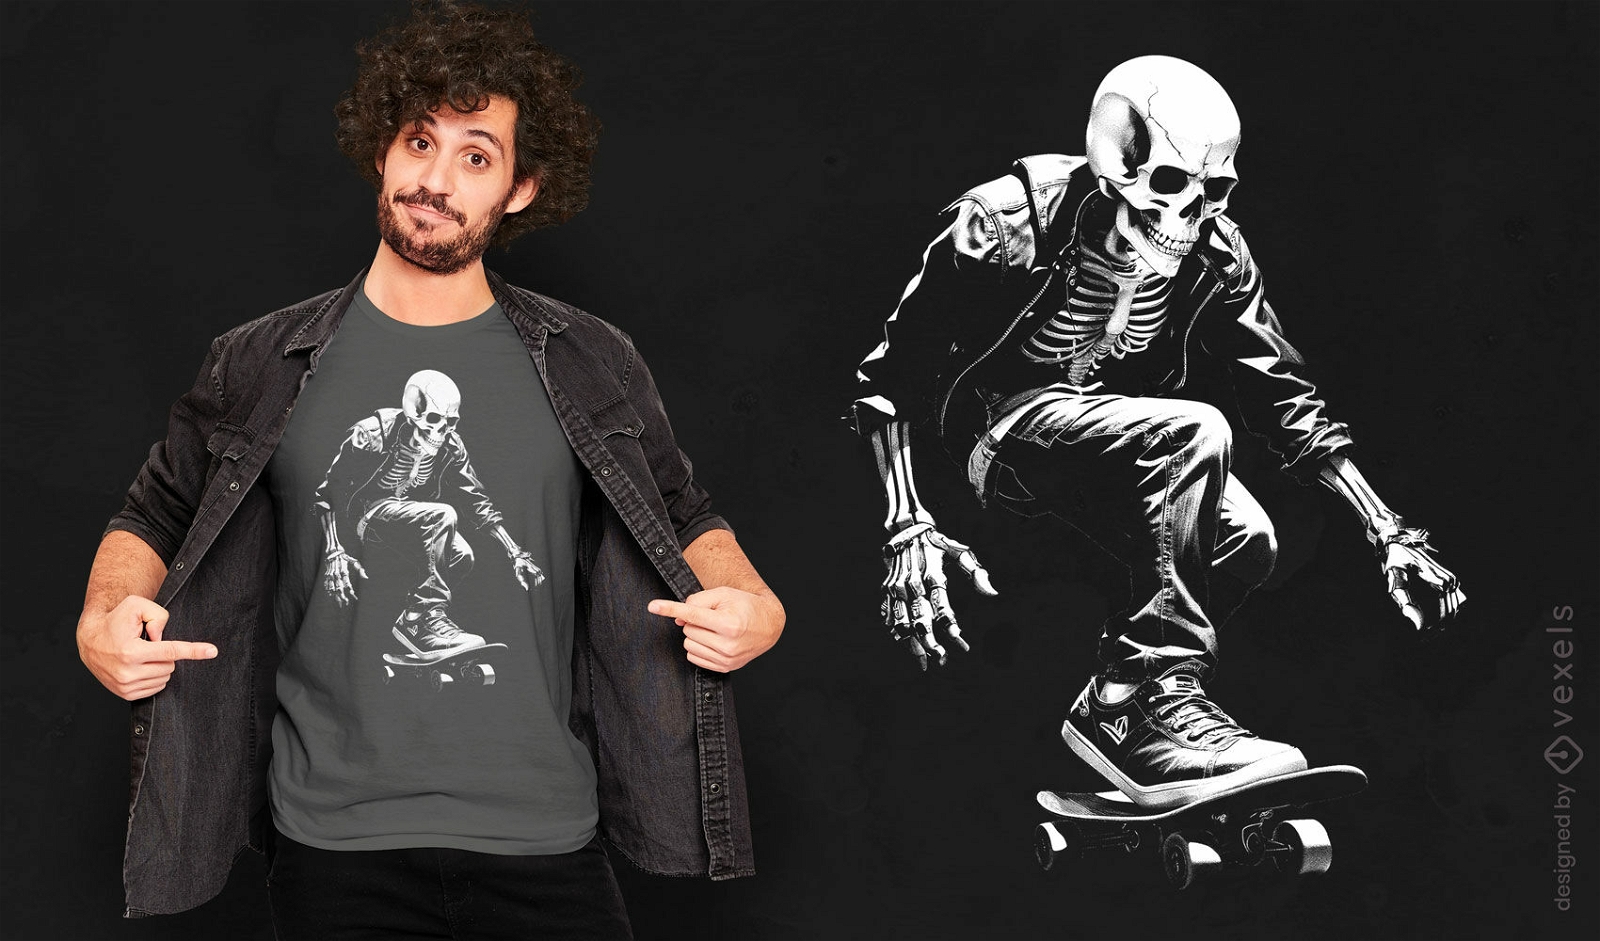 Diseño de camiseta genial de skater esqueleto.